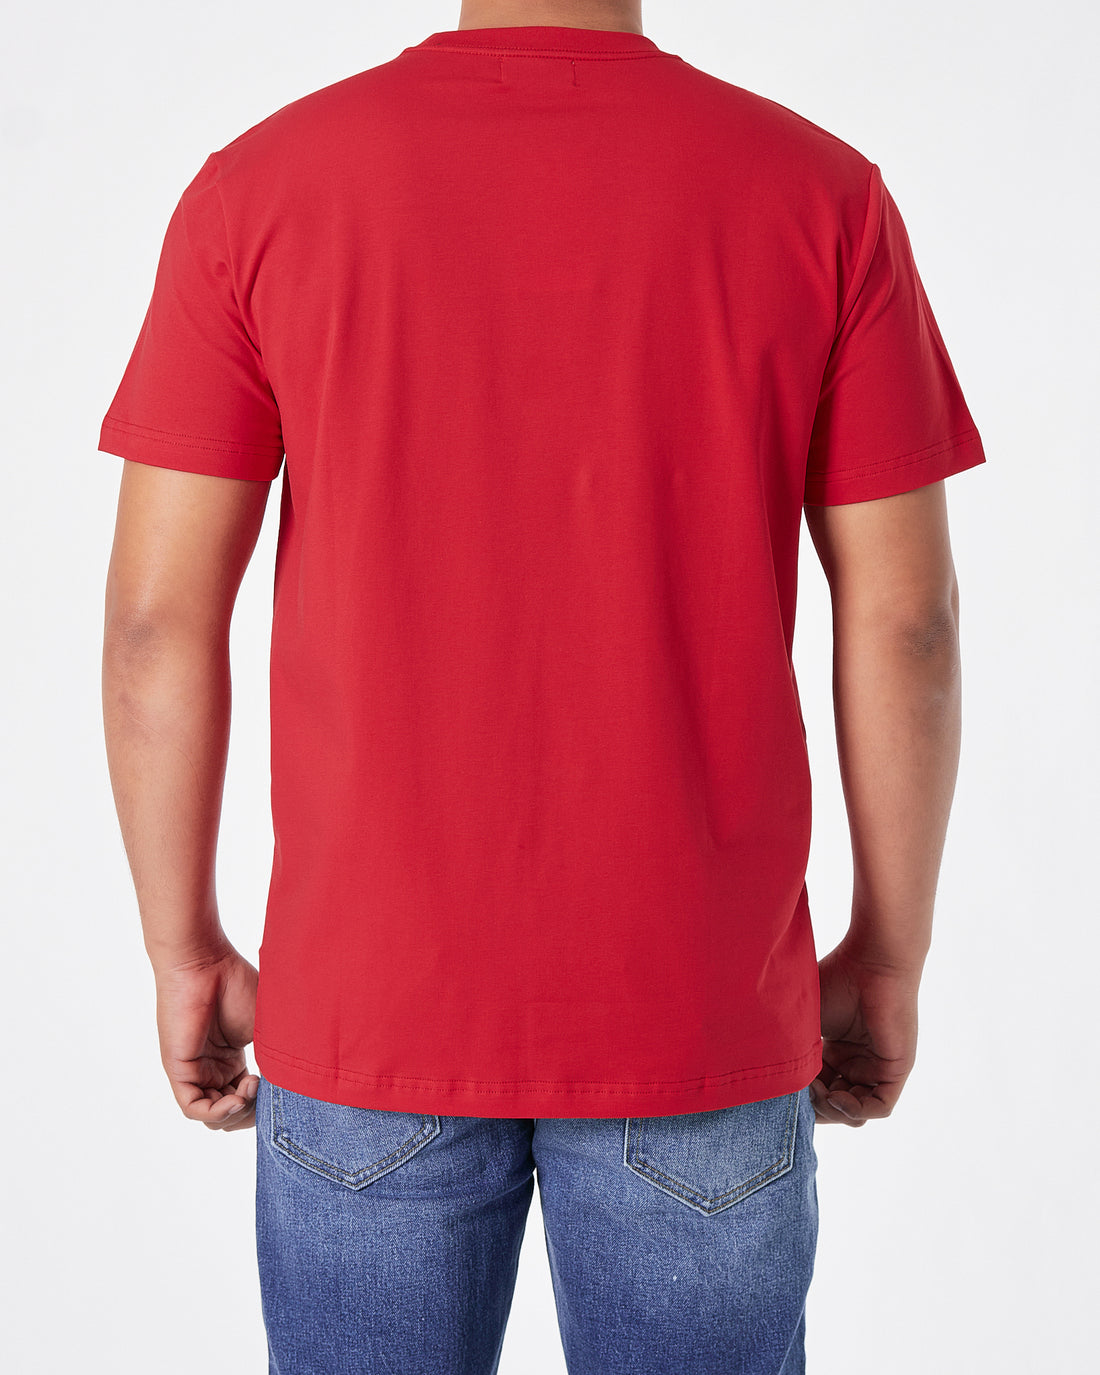 KEN Paris Printed Men Red T-Shirt 16.50